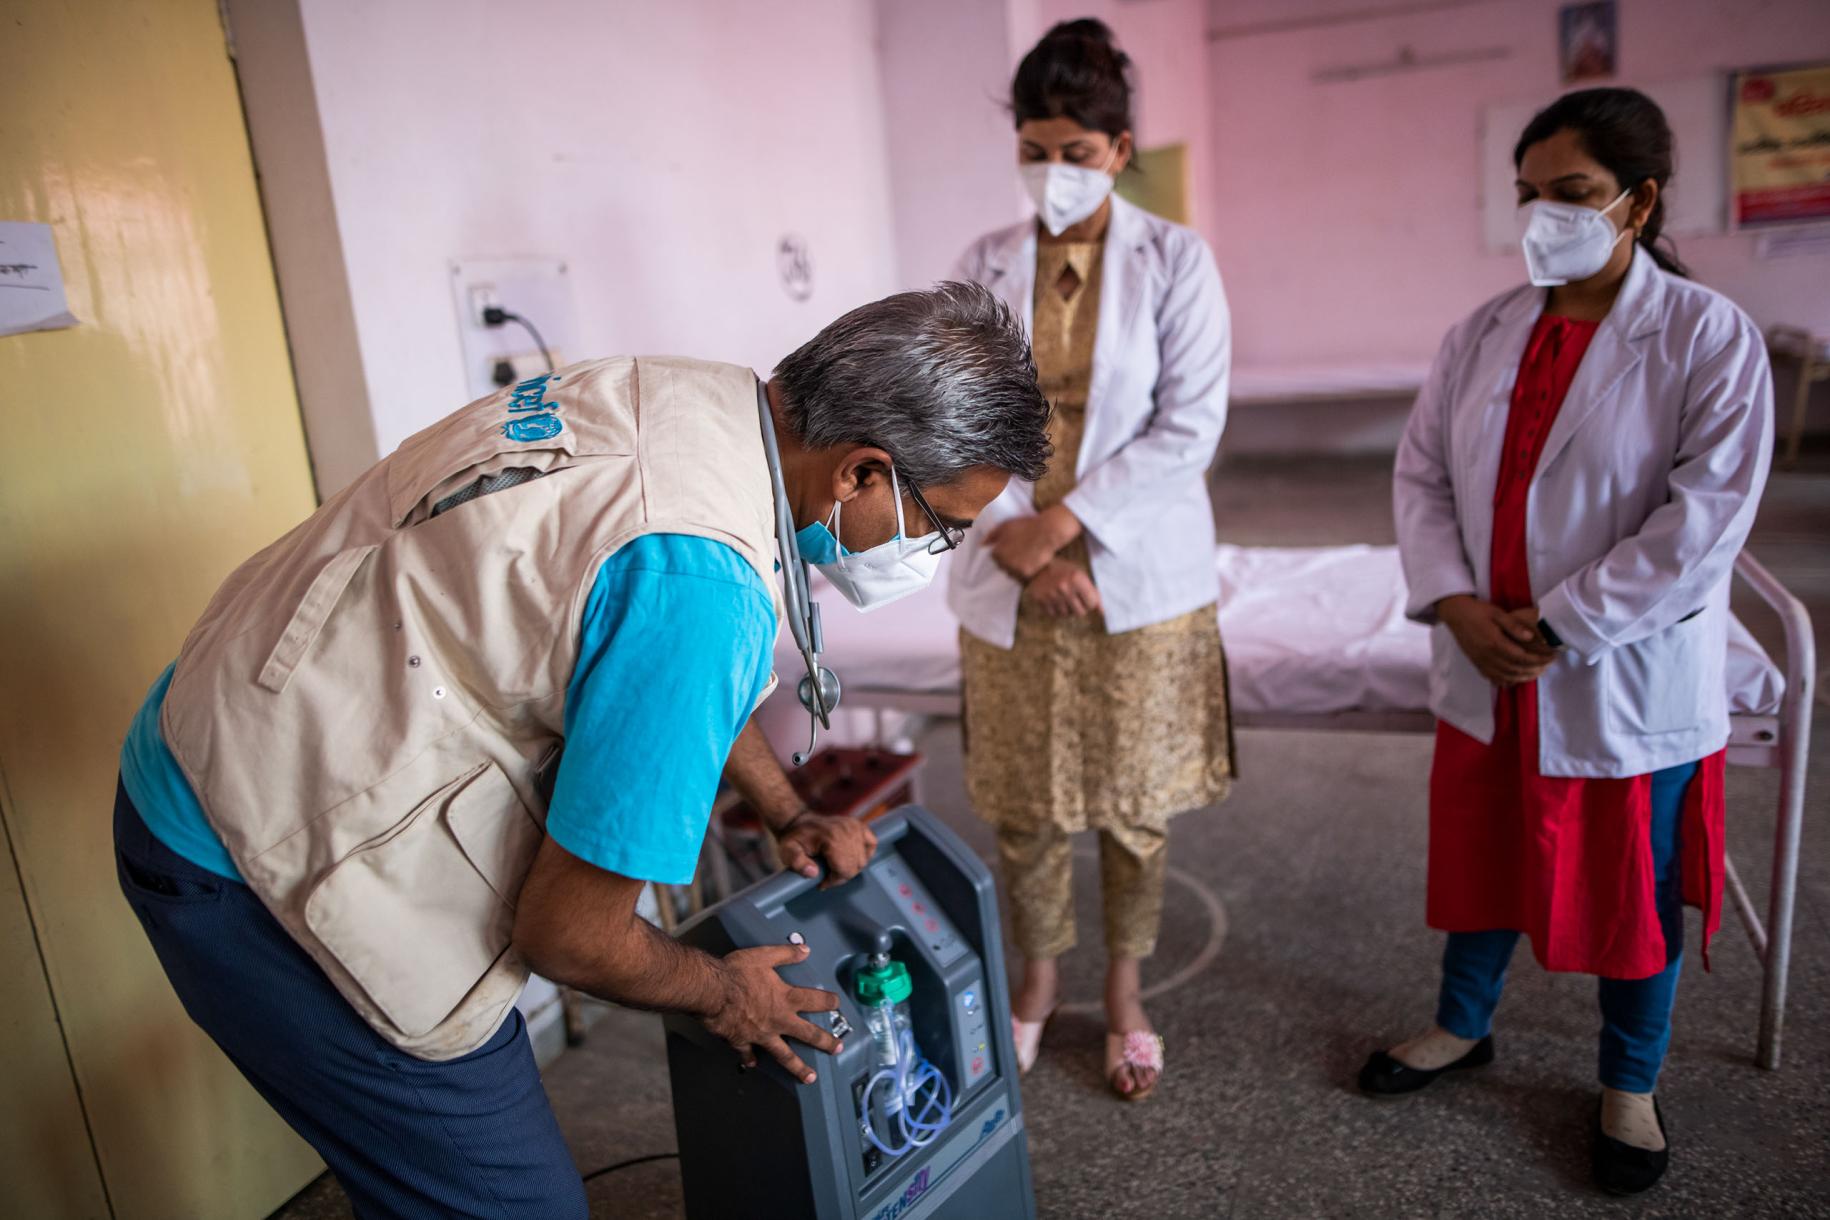 联合国儿童基金会(儿基会)卫生专家普拉文·霍布拉加德博士（Dr. Pravin Khobragade）向医护人员展示一台氧气浓缩器。 